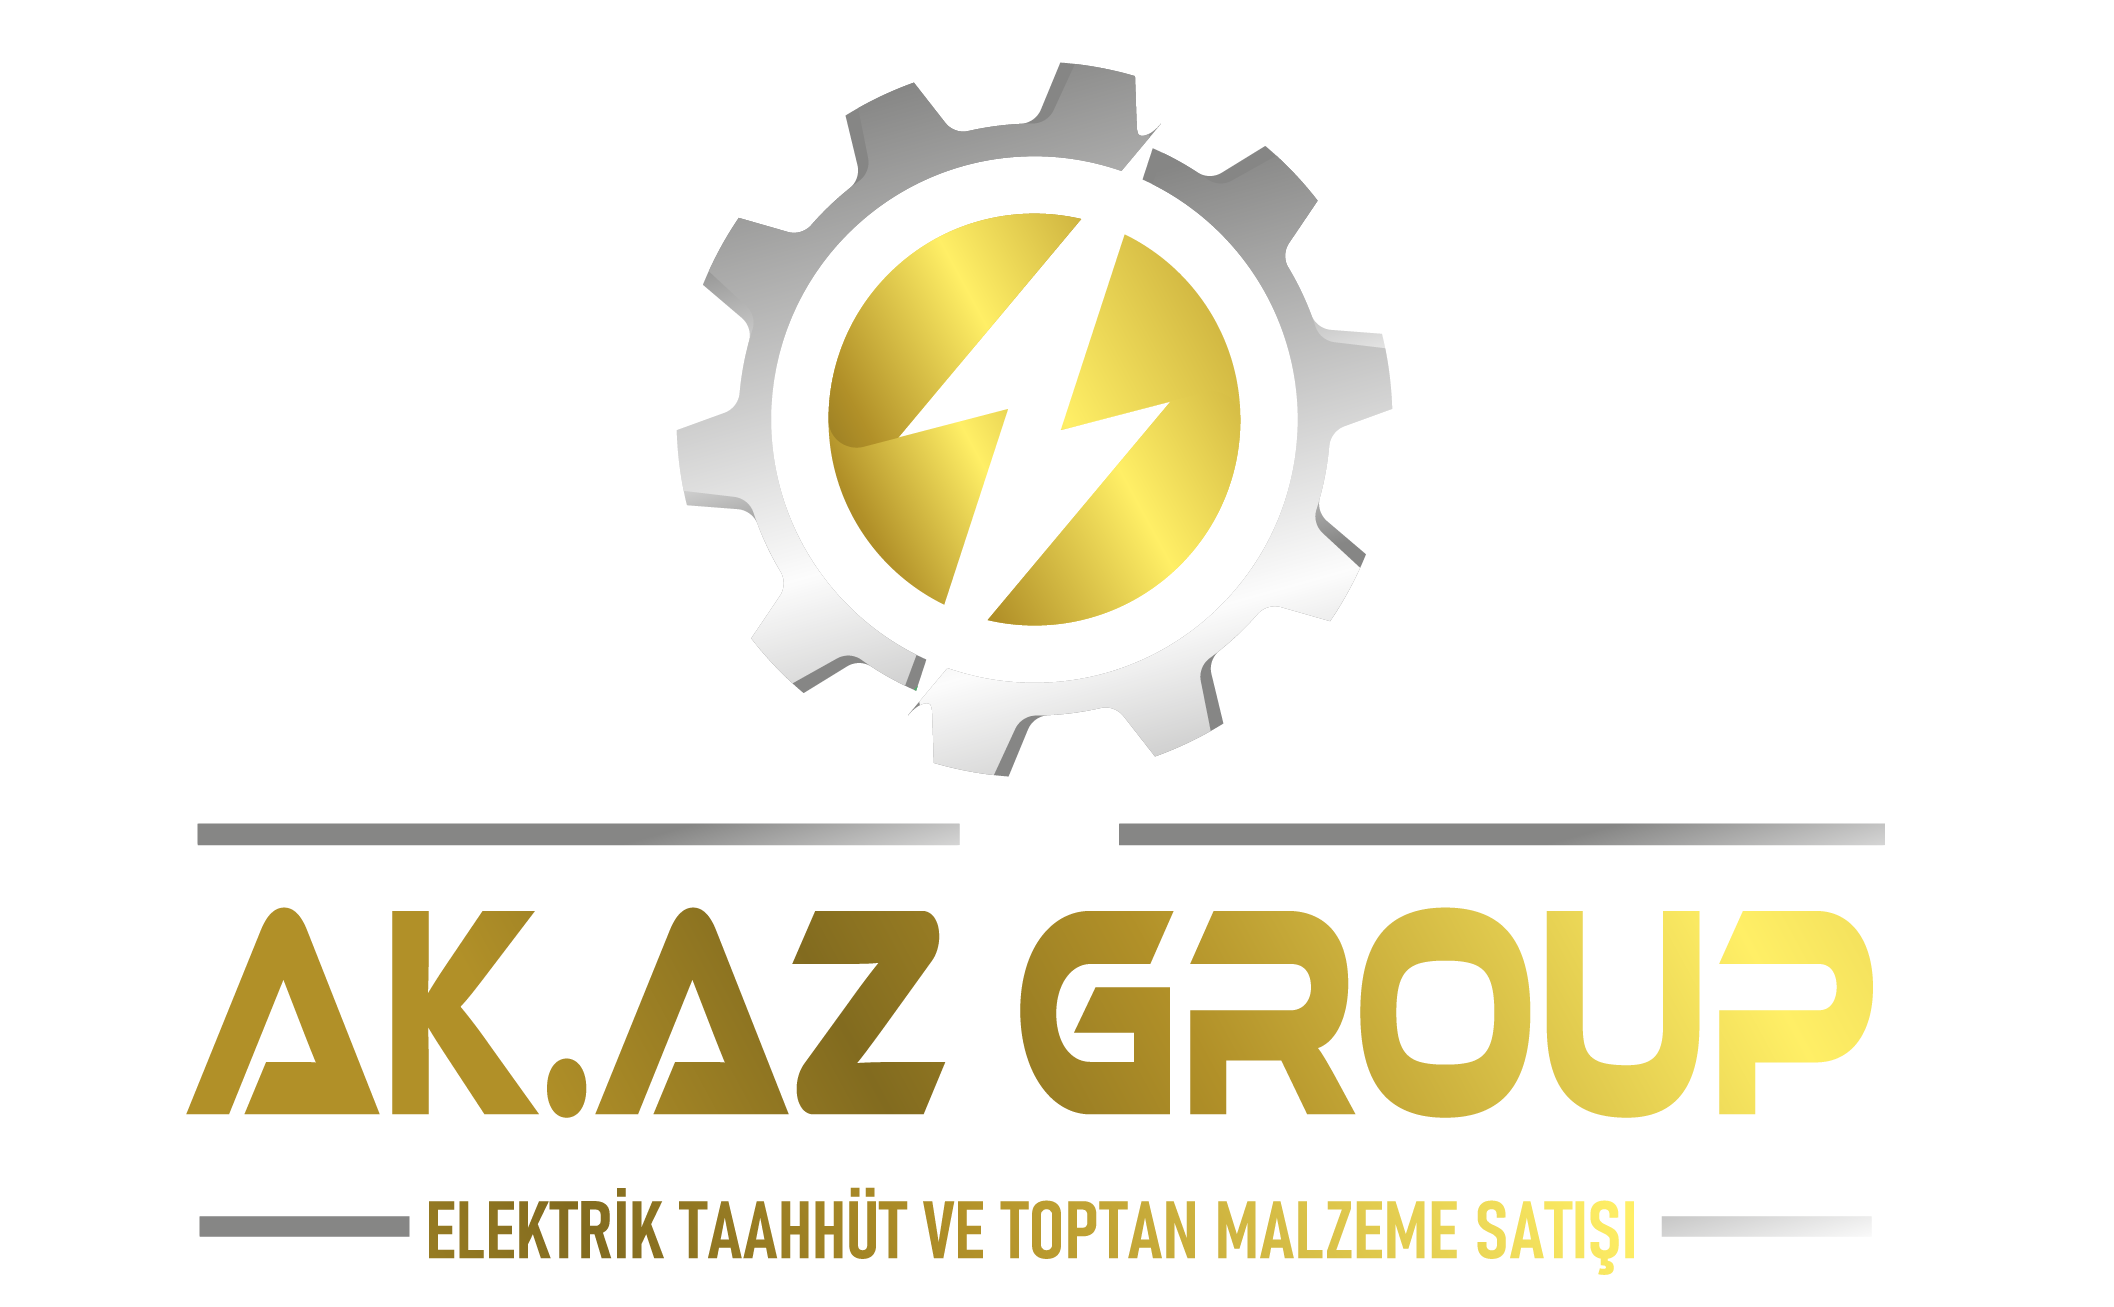 Akaz Group | Elektrik Taahhüt ve Toptan Malzeme Satışı